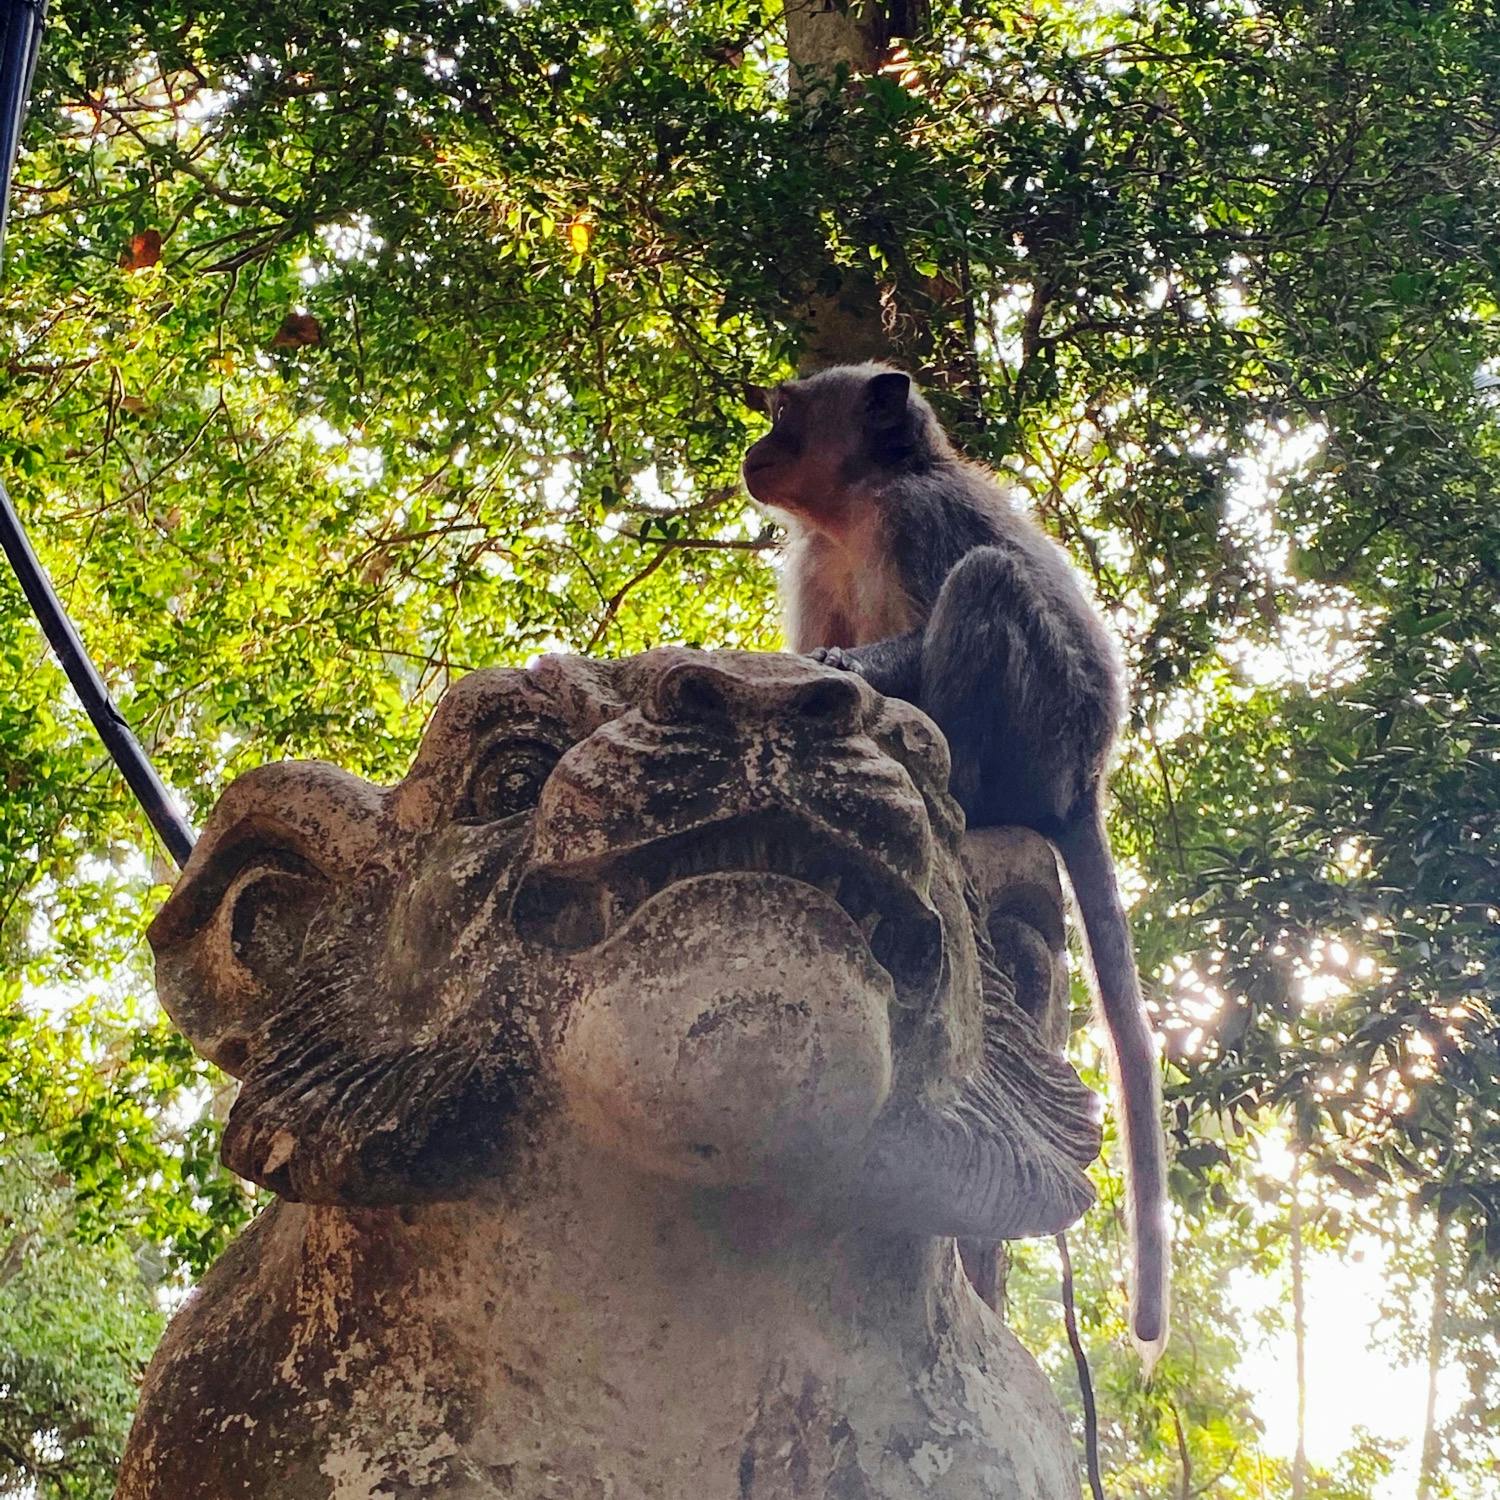 モンキーフォレスト Monkey Forest の投稿写真 感想 みどころ バリ島 モンキーフォレスト森林浴しながら野生のお猿さんを見 トリップノート